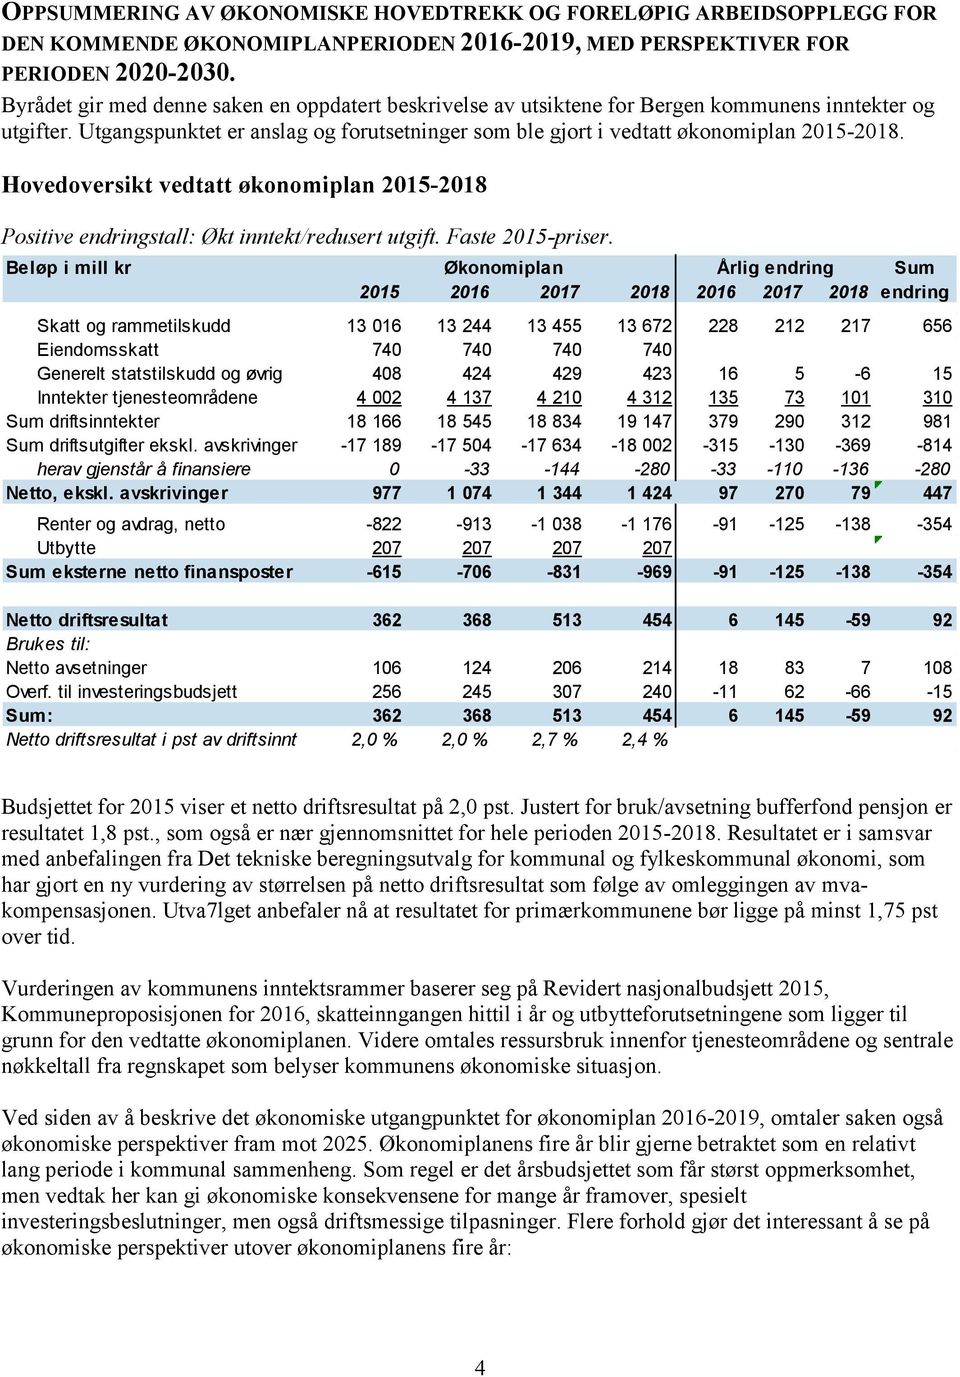 Hovedoversikt vedtatt økonomiplan 2015-2018 Positive endringstall: Økt inntekt/redusert utgift. Faste 2015-priser.